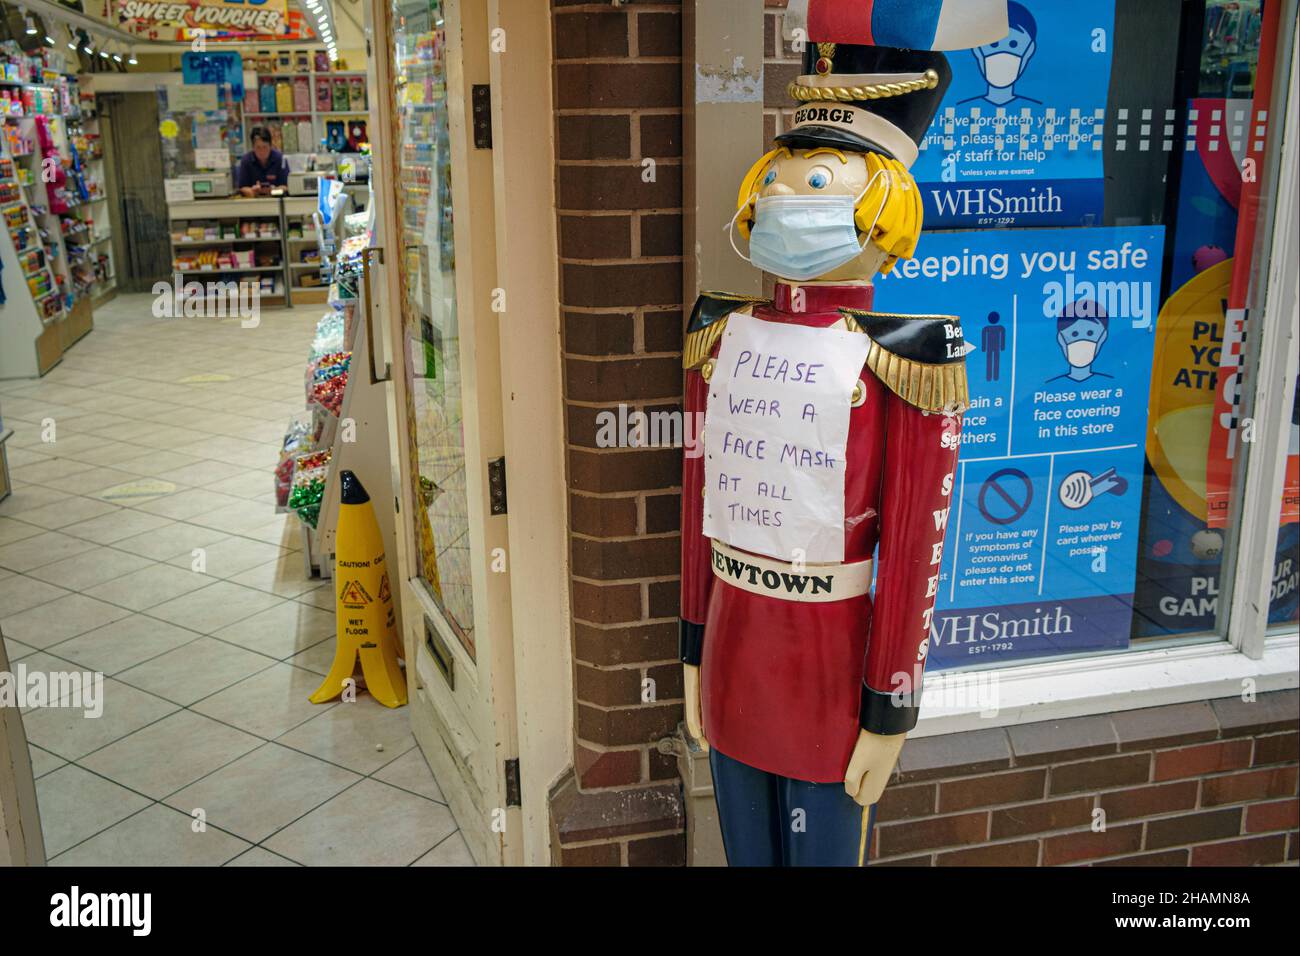 'Si prega di indossare sempre una maschera facciale' - un cartello all'esterno di un negozio di dolci durante la pandemia di Covid-19 a Newtown, Powys, Galles, 2021 Foto Stock